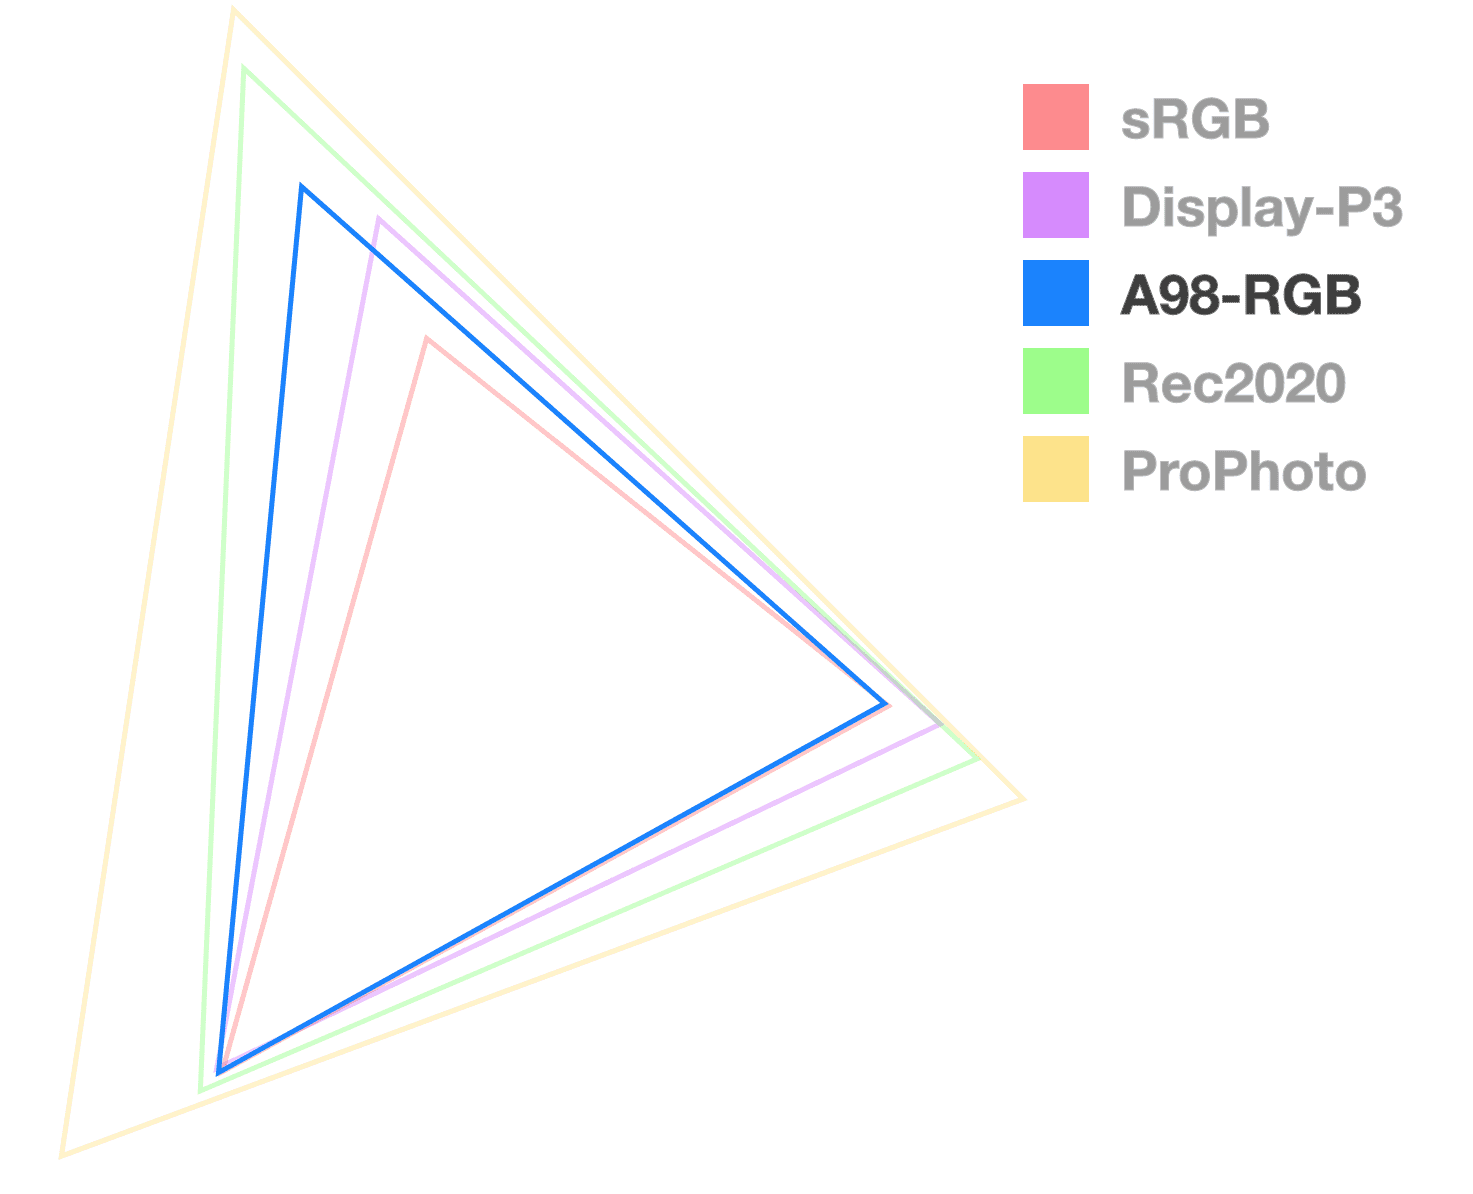 Tamamen opak olan tek dikdörtgen A98 üçgenidir. Bu, gamın boyutunun görselleştirilmesine yardımcı olur. Orta boy üçgen gibi görünür.